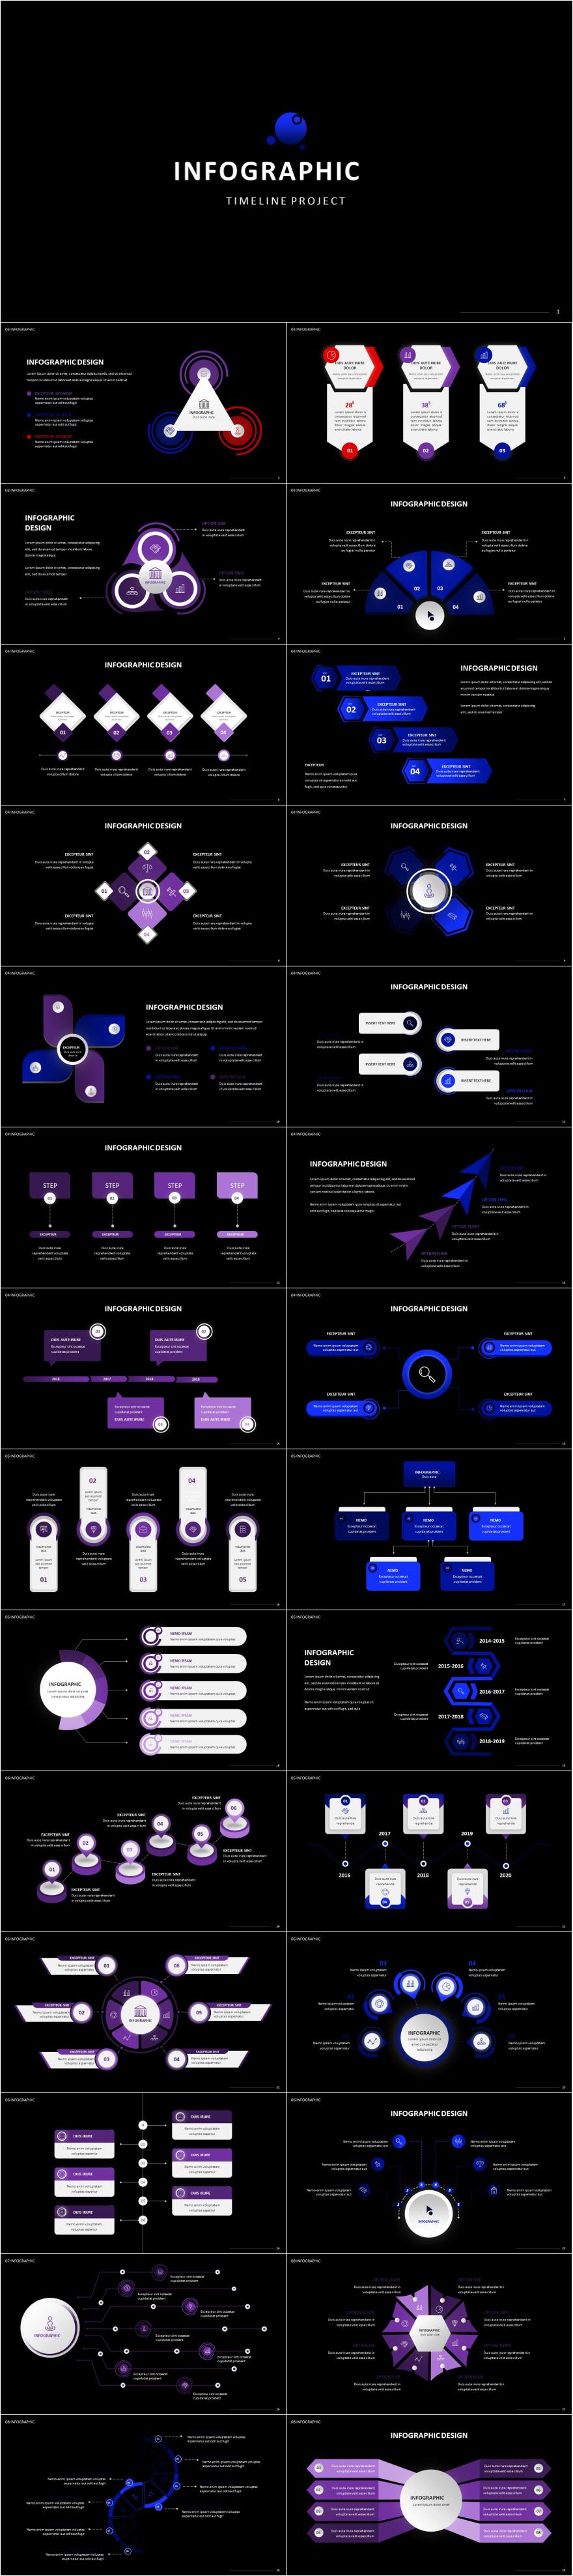 紫色精美国外时间轴发展keynote图表模板